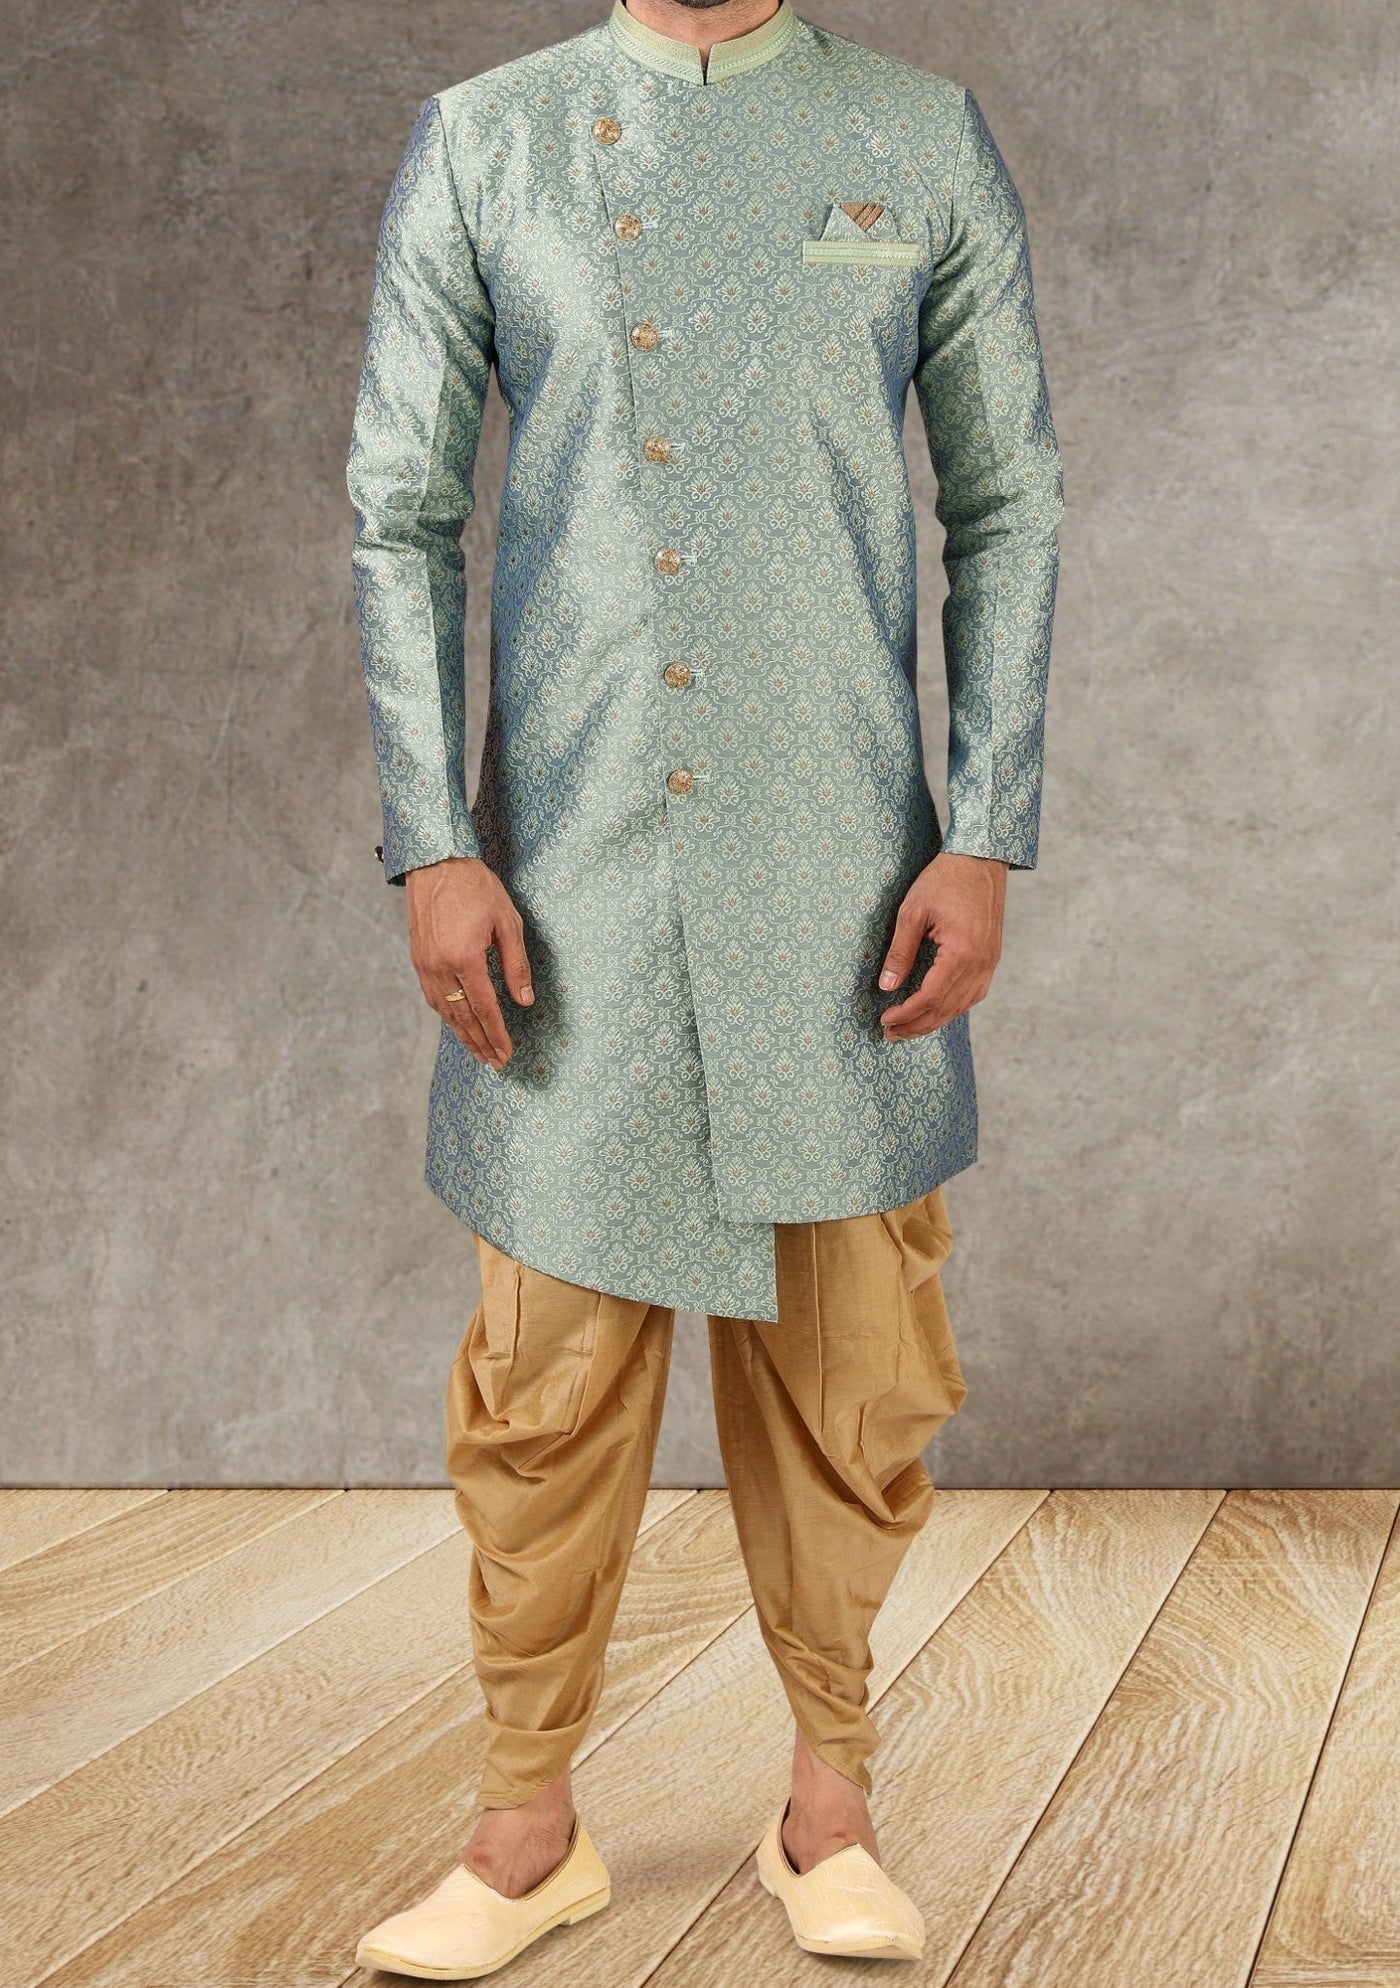 Men's Indo Western Party Wear Sherwani Suit - db20668